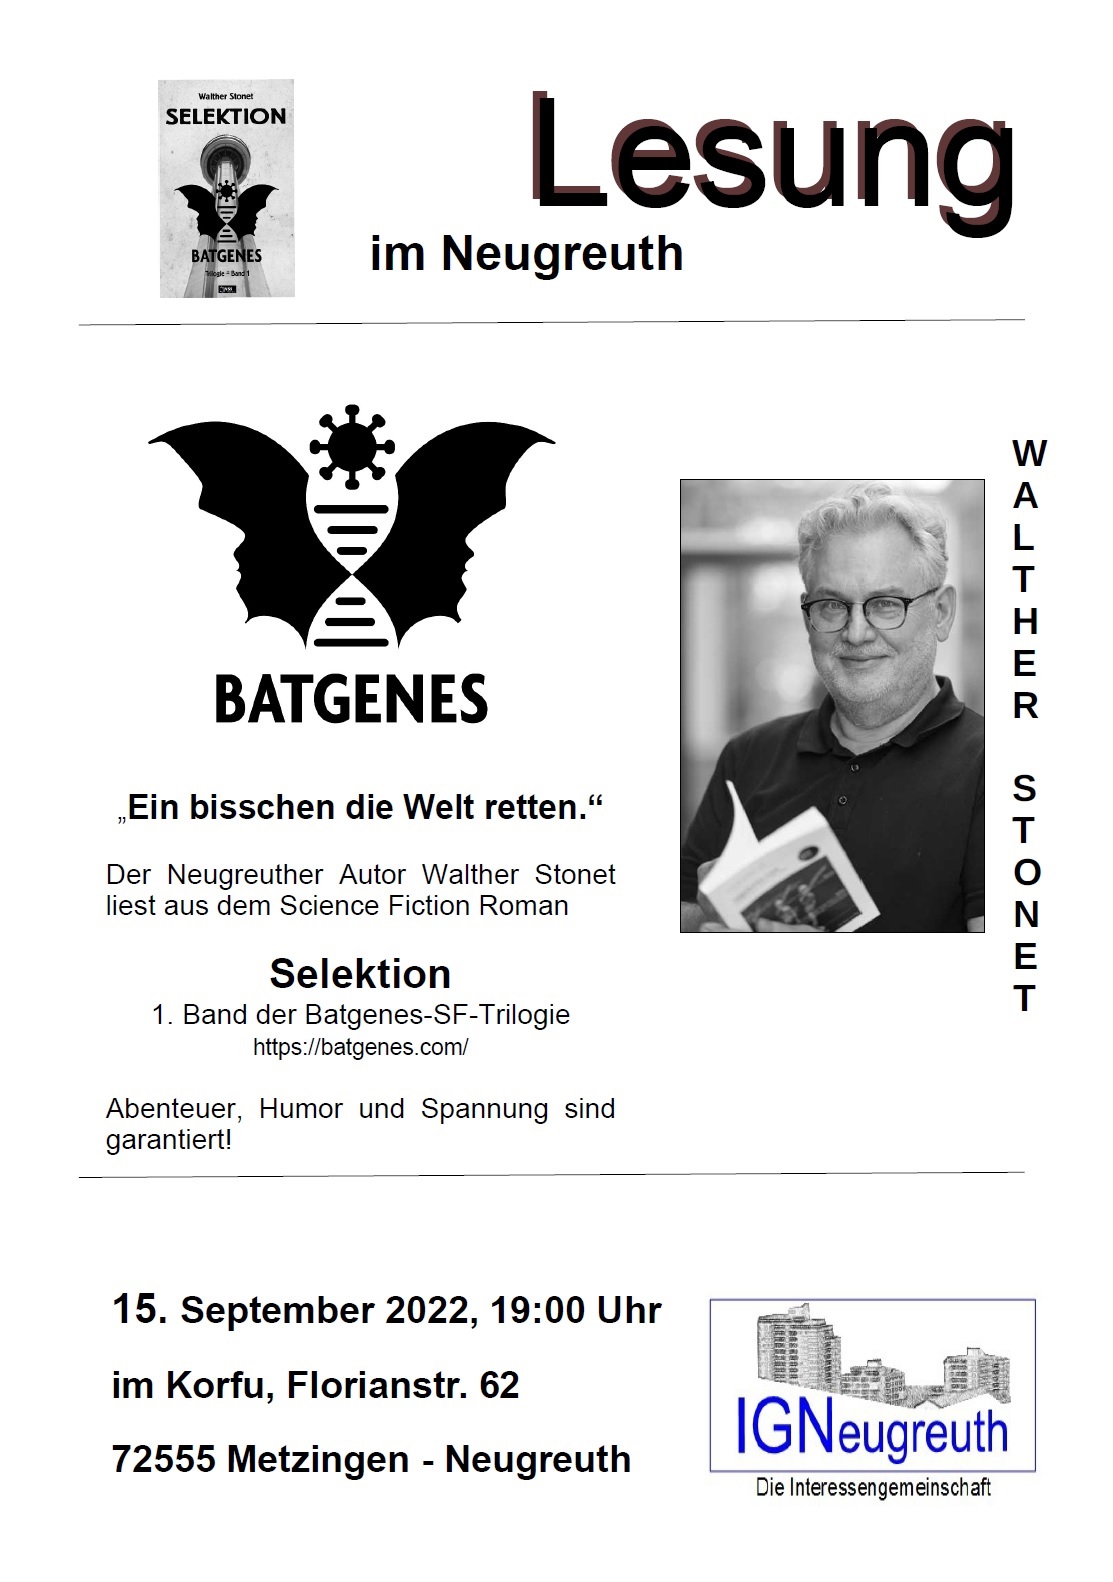 15.09.2022 19 Uhr: 2. Science Fiction Lesung der IGN Neugreuth im Restaurant Corfu Metzingen-Neugreuth